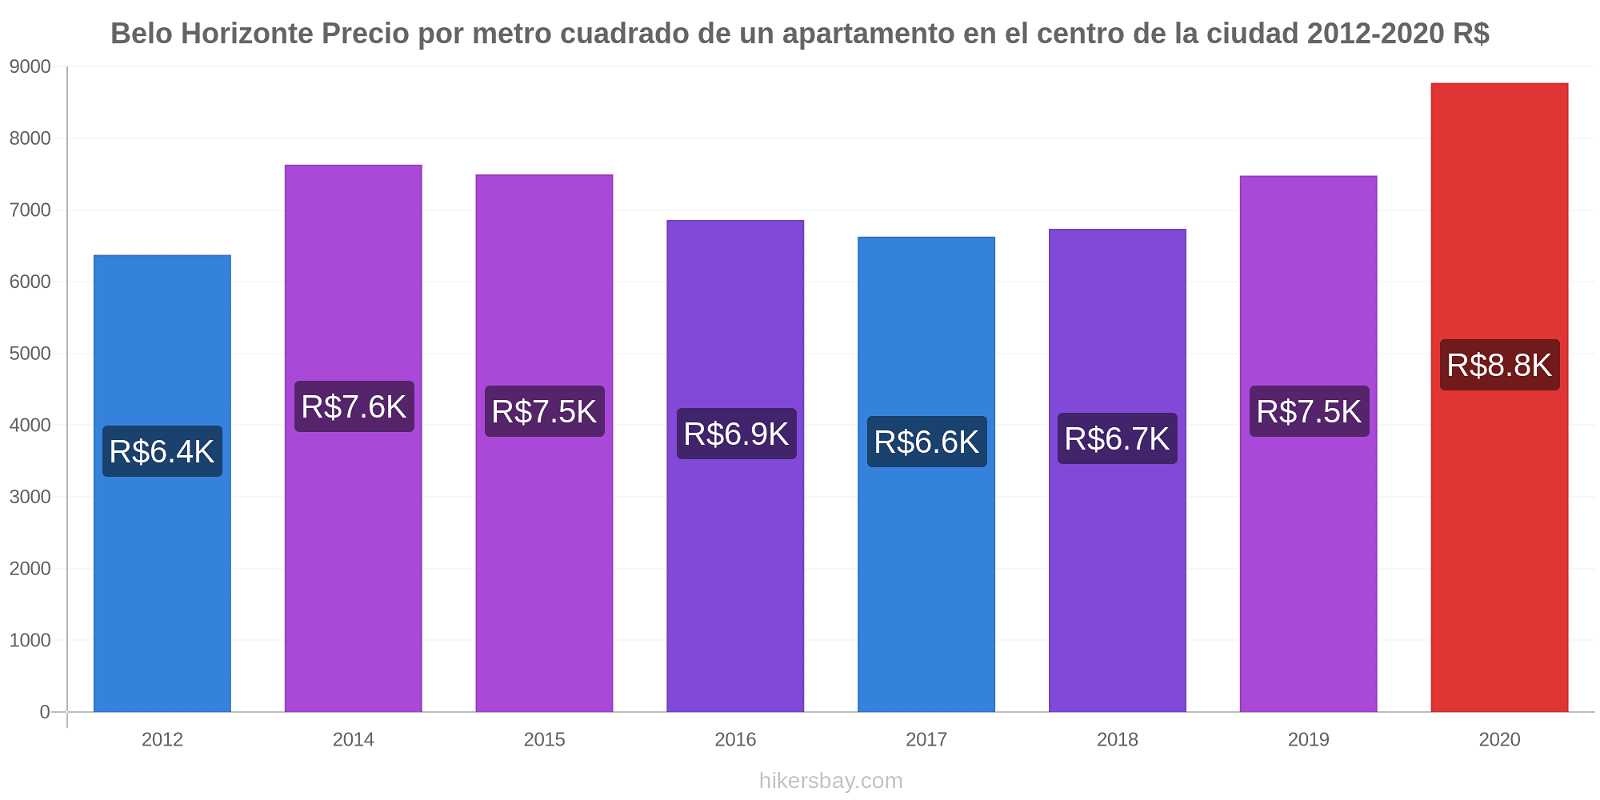 Belo Horizonte cambios de precios Precio por metro cuadrado para comprar un apartamento en el centro de la ciudad hikersbay.com